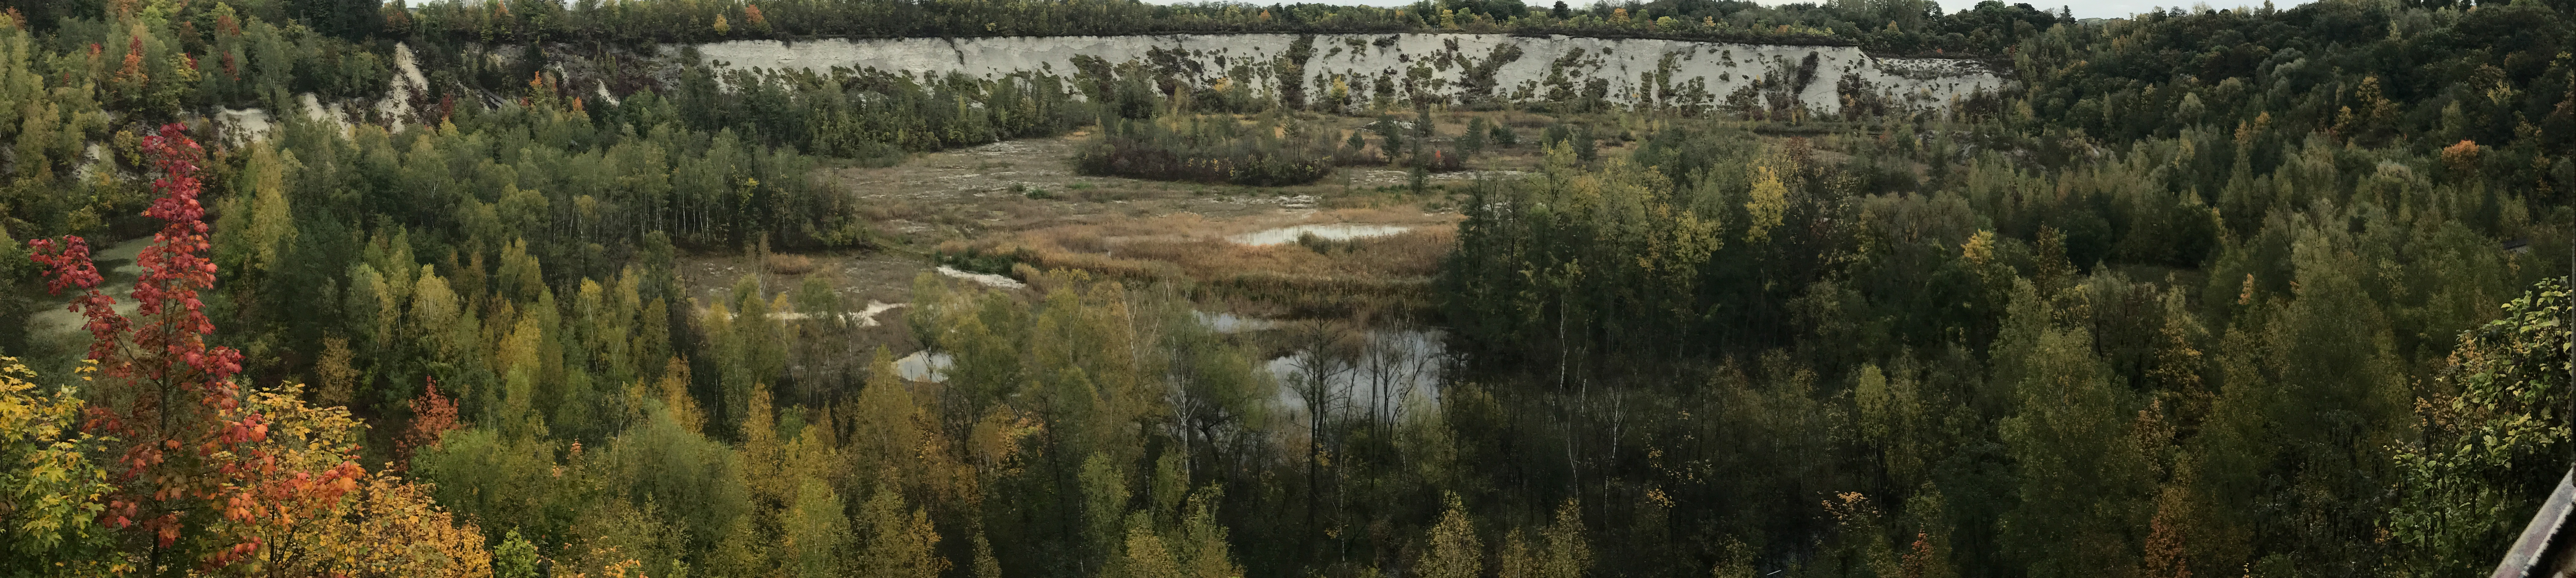 Waldbereiche mit Herbstfärbung und mittig ein Gewässer mit Mergelgrube